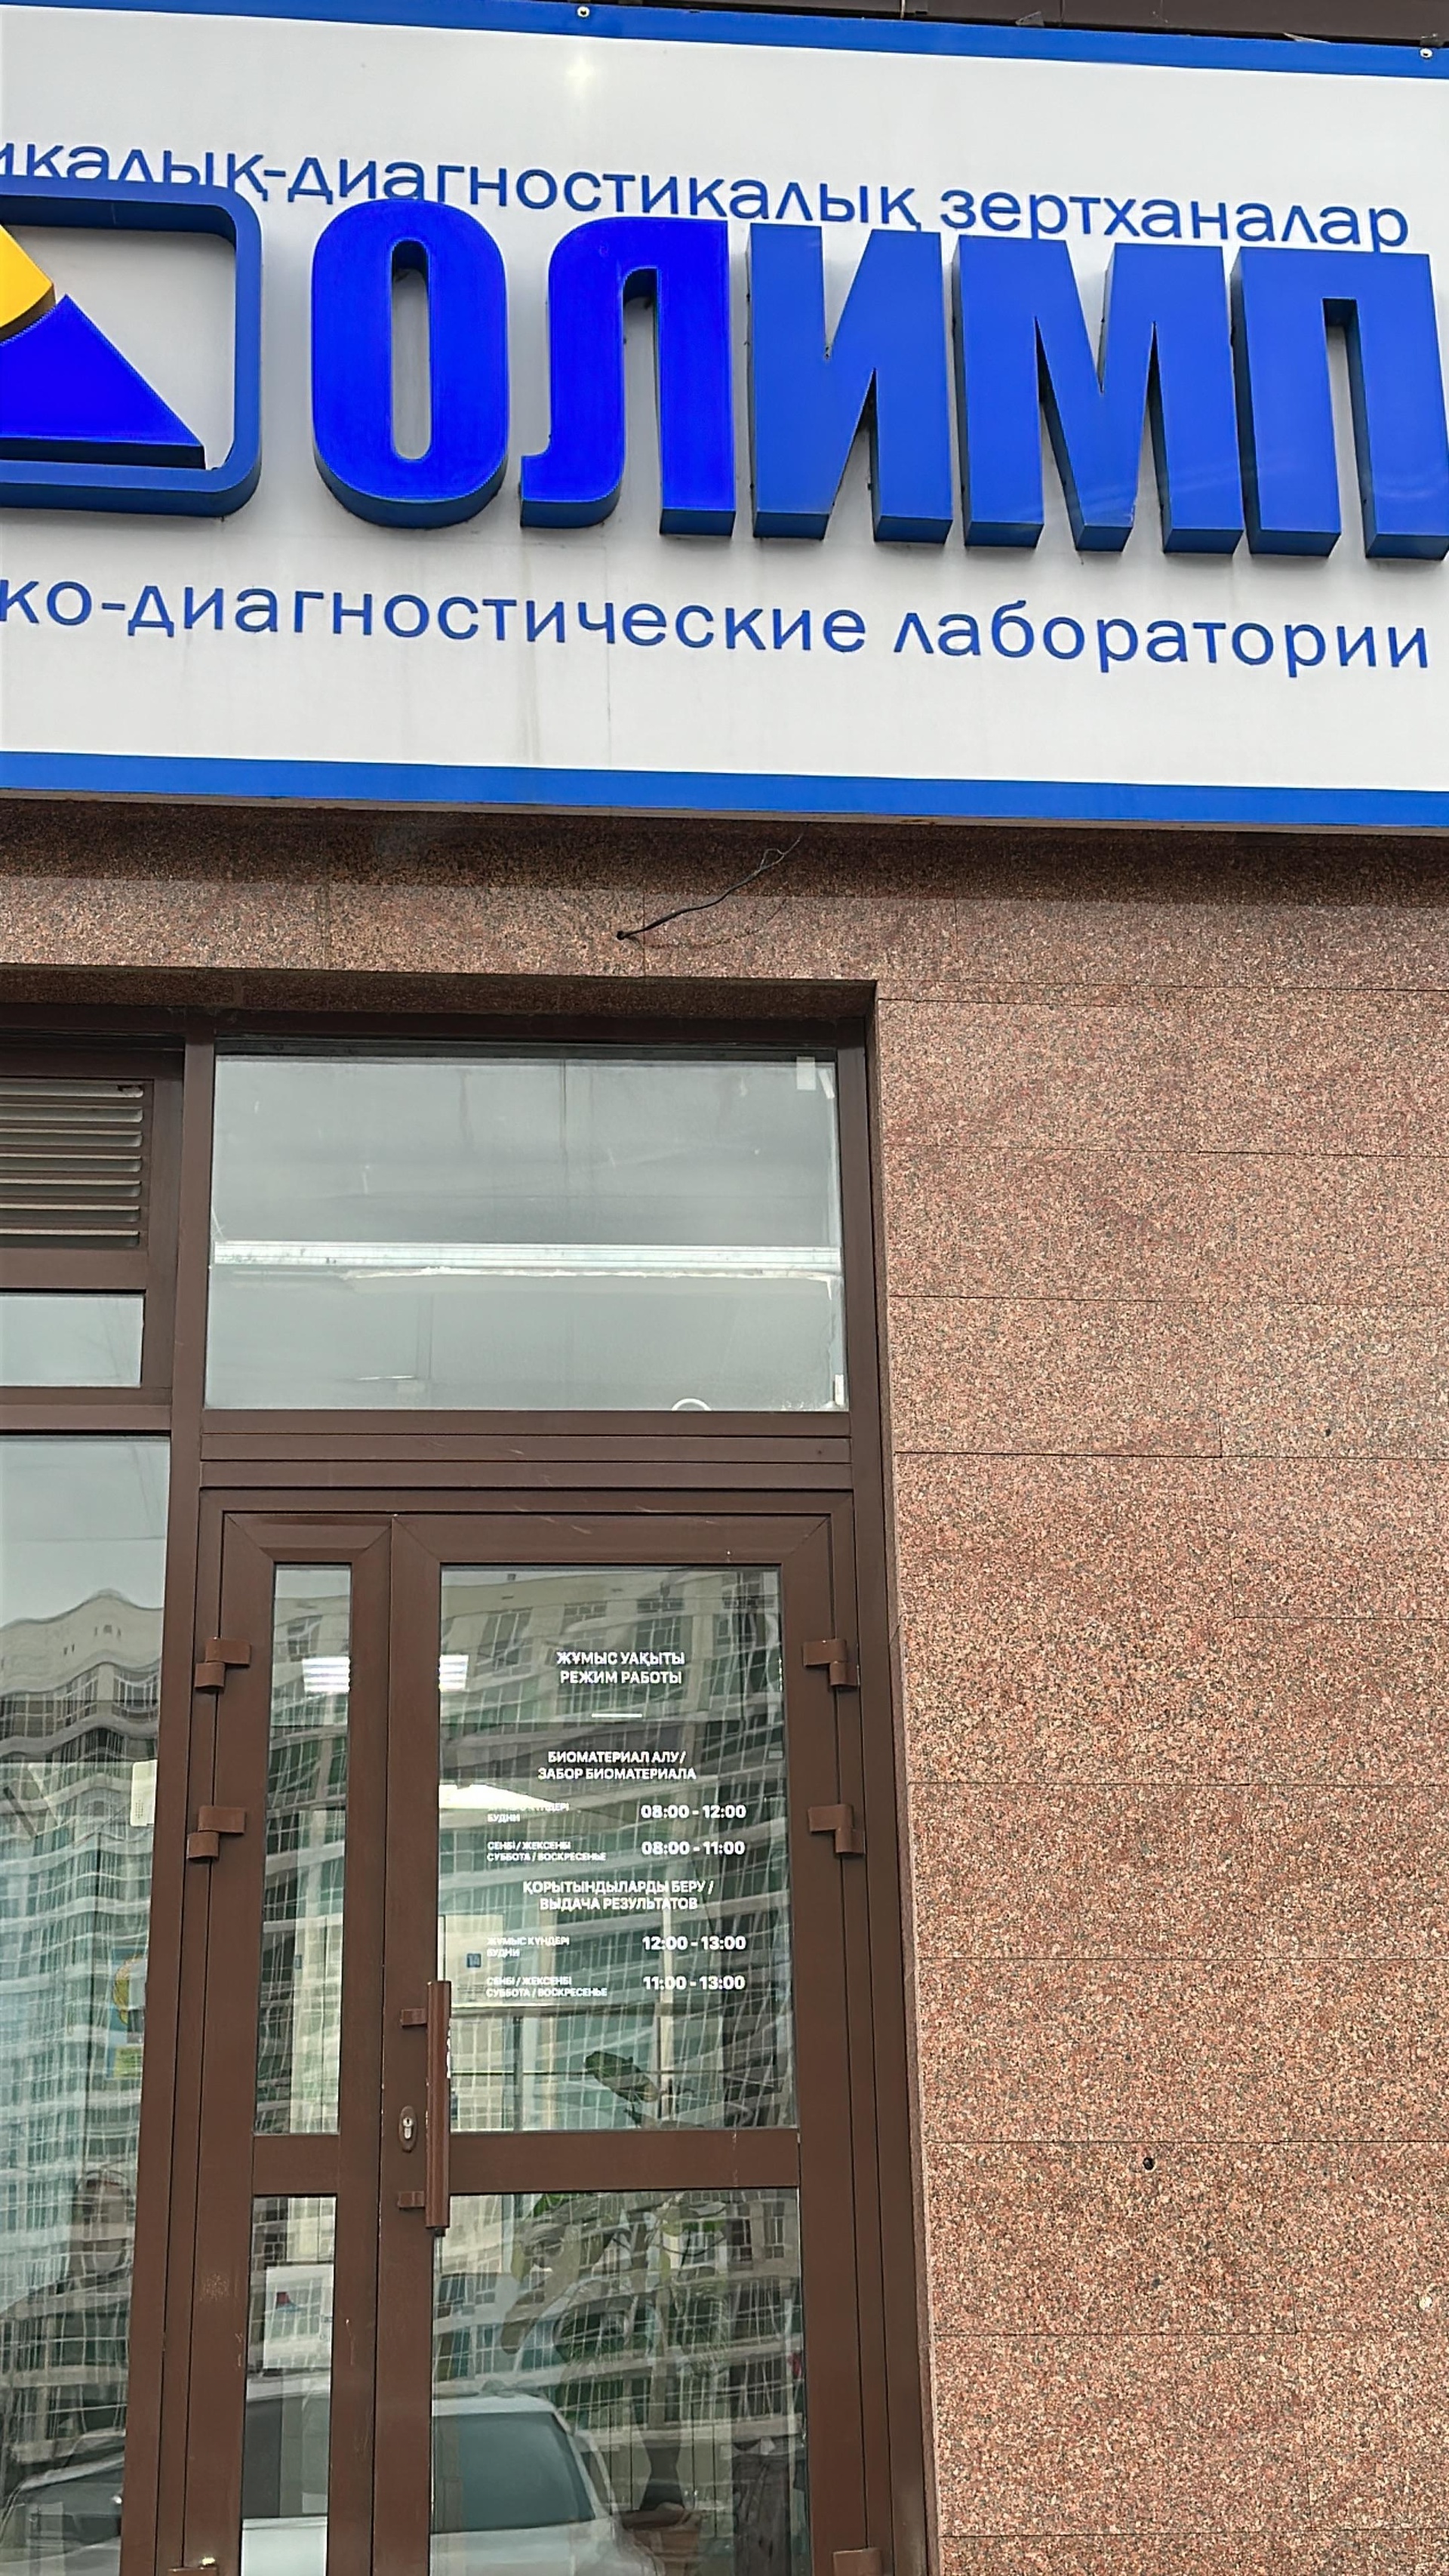 КДЛ Олимп, медицинская лаборатория, ул. Сыганак, 2, Астана — Яндекс Карты